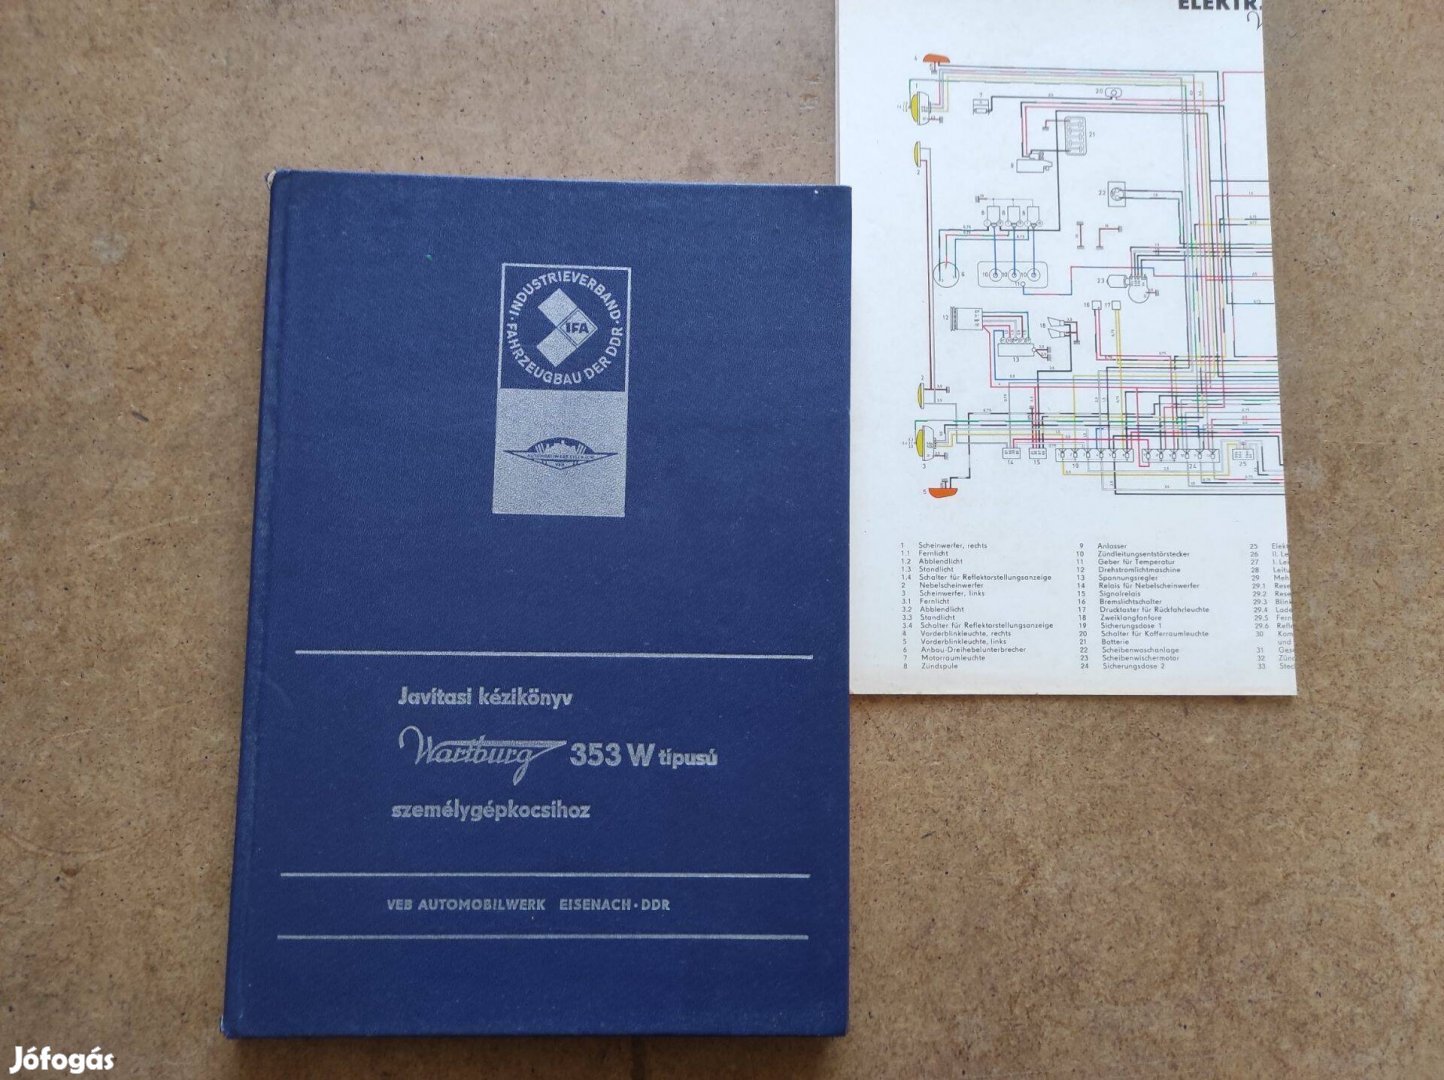 Wartburg 353 W javítási könyv elektromos rajzzal